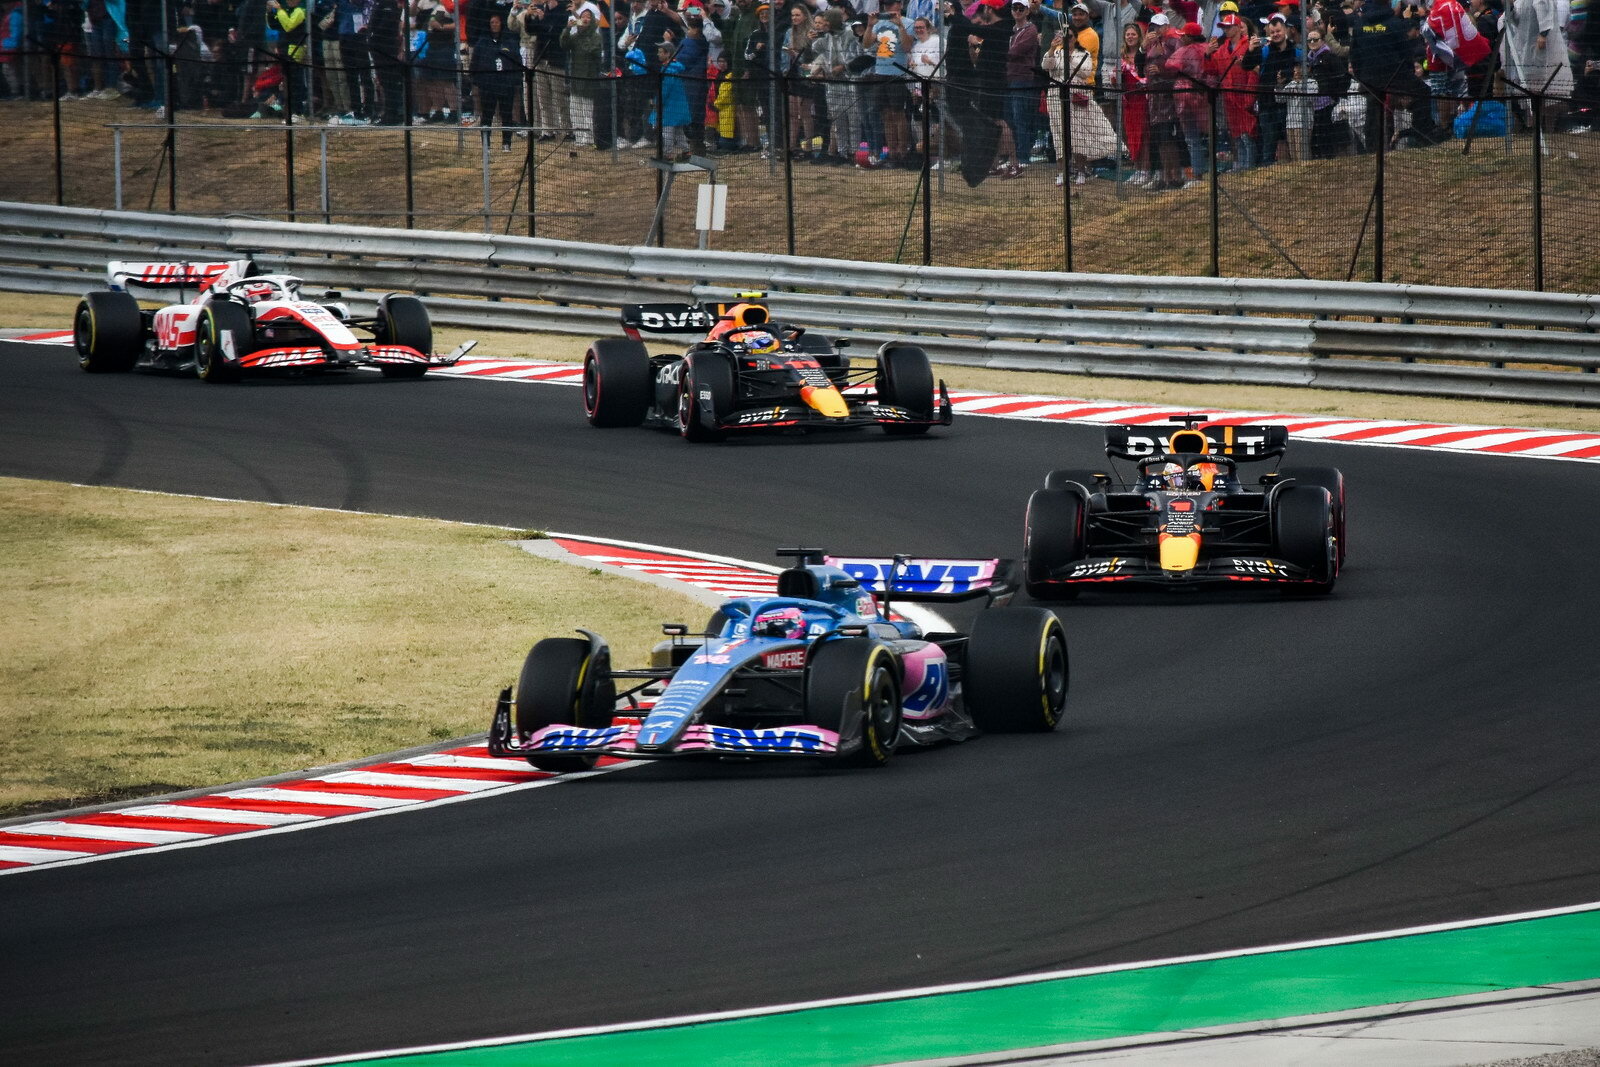 Čtveřice Alonso, Verstappen, Pérez a poslední Magnussen, který má poškozené přední křídlo